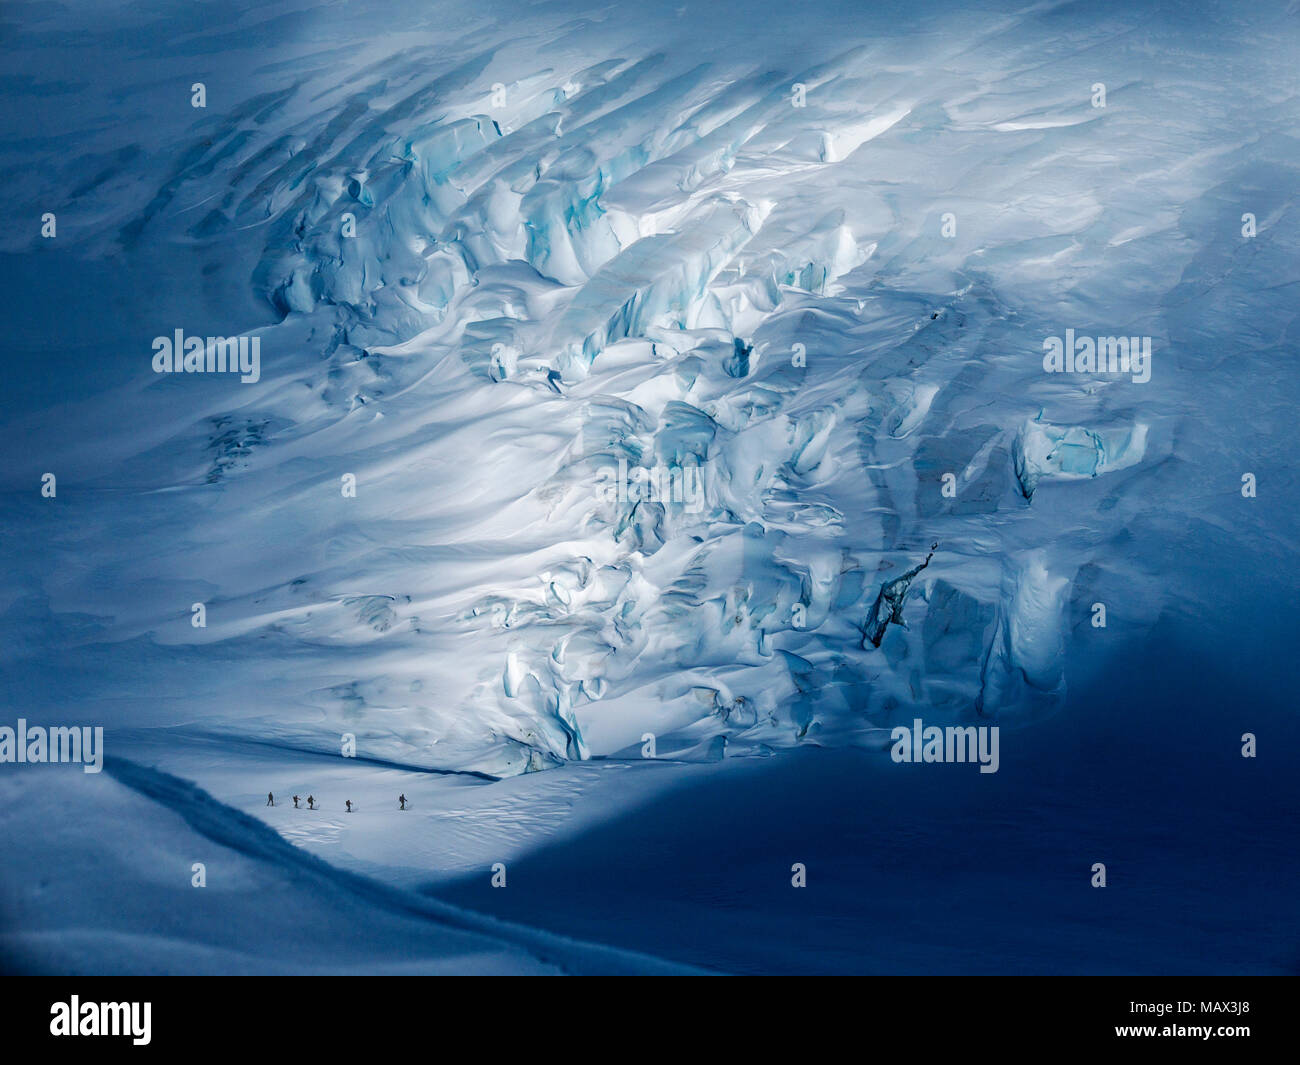 Montée ski alpinisme glacier sans nom ; de la neige et de la glace antarctique couverte ; paysage Admiralty Bay ; l'île du Roi George Banque D'Images